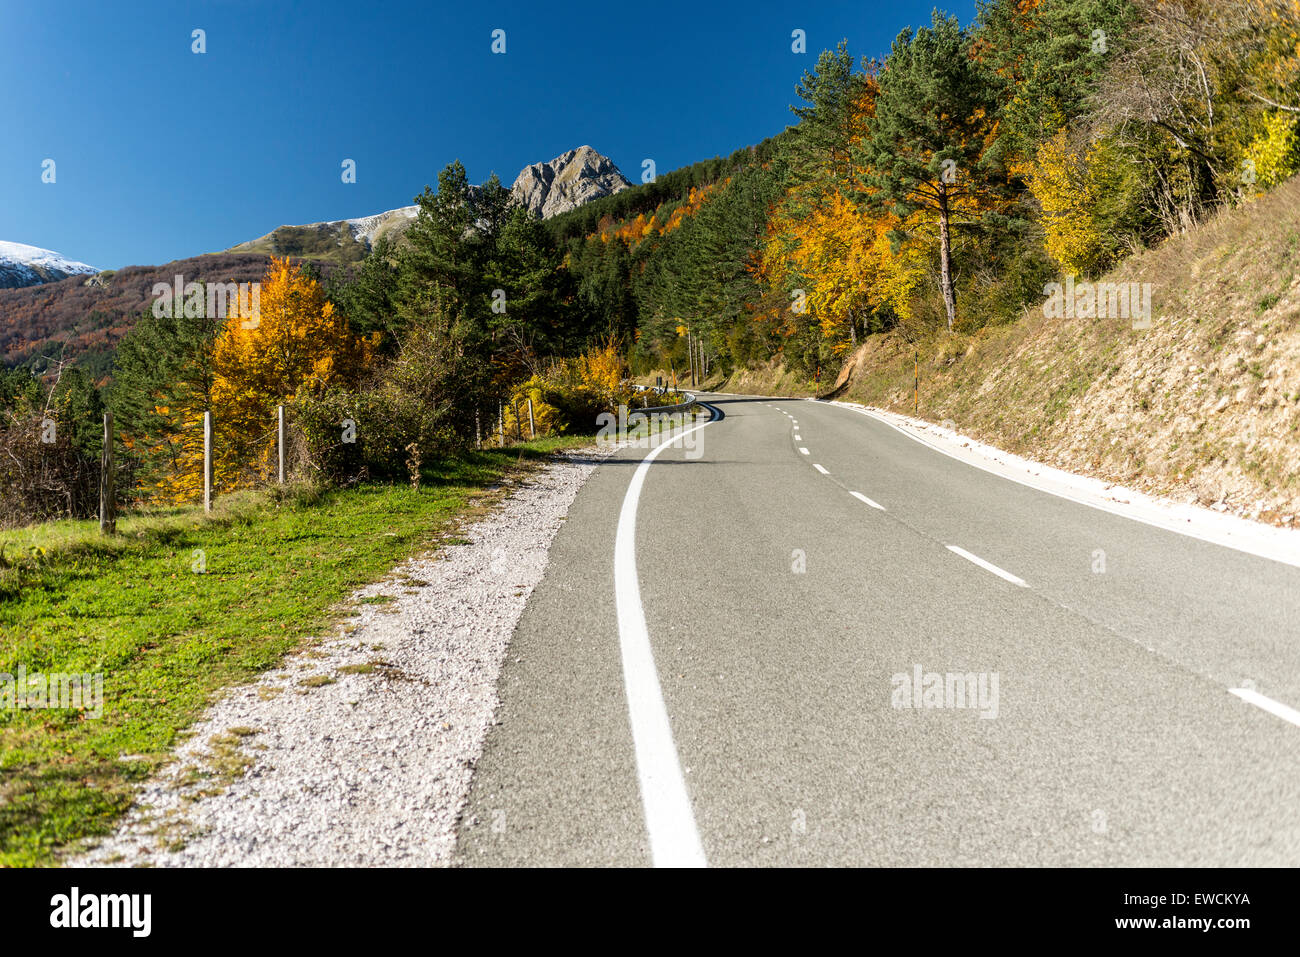 Larra Belagua road. Vallée de Roncal, Pyrénées de Navarre, Espagne Banque D'Images